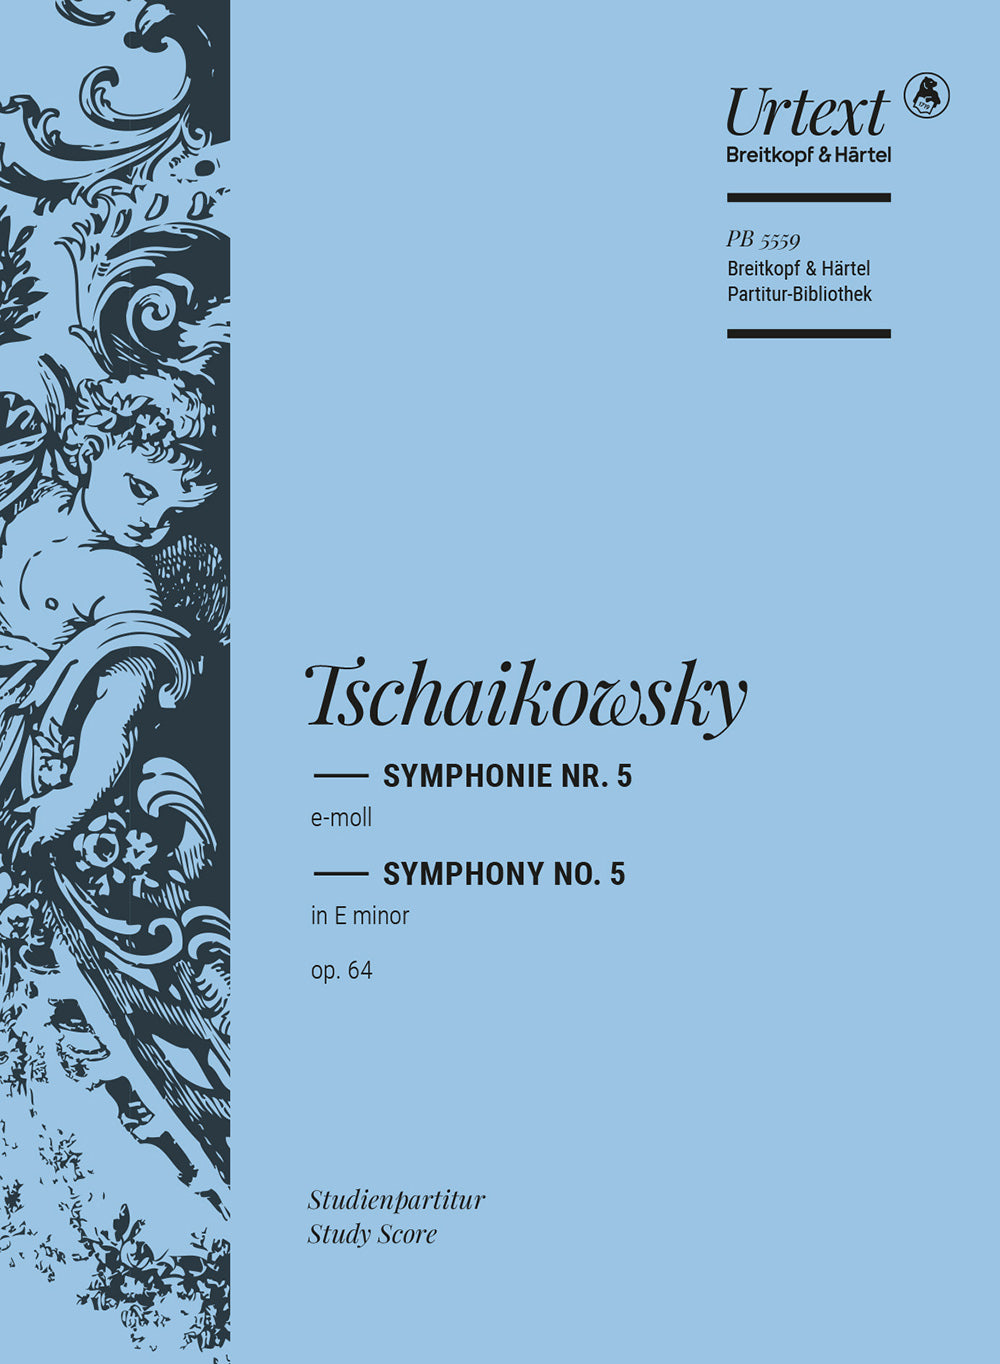 Tchaikovsky Symphony No. 5 in E minor Op. 64